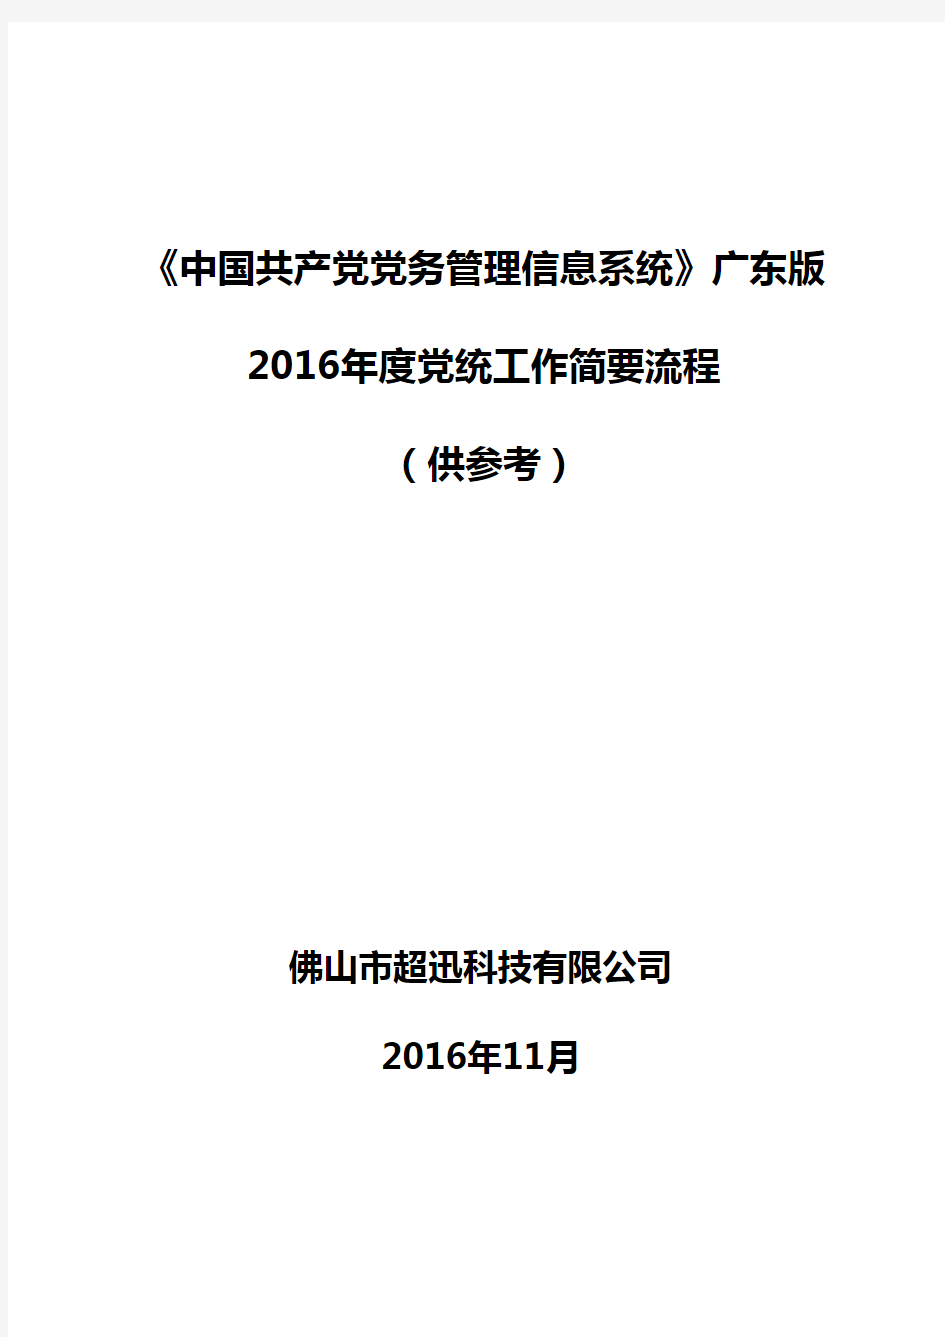 《党务系统》广东版2016年党内统计工作流程(供参考)